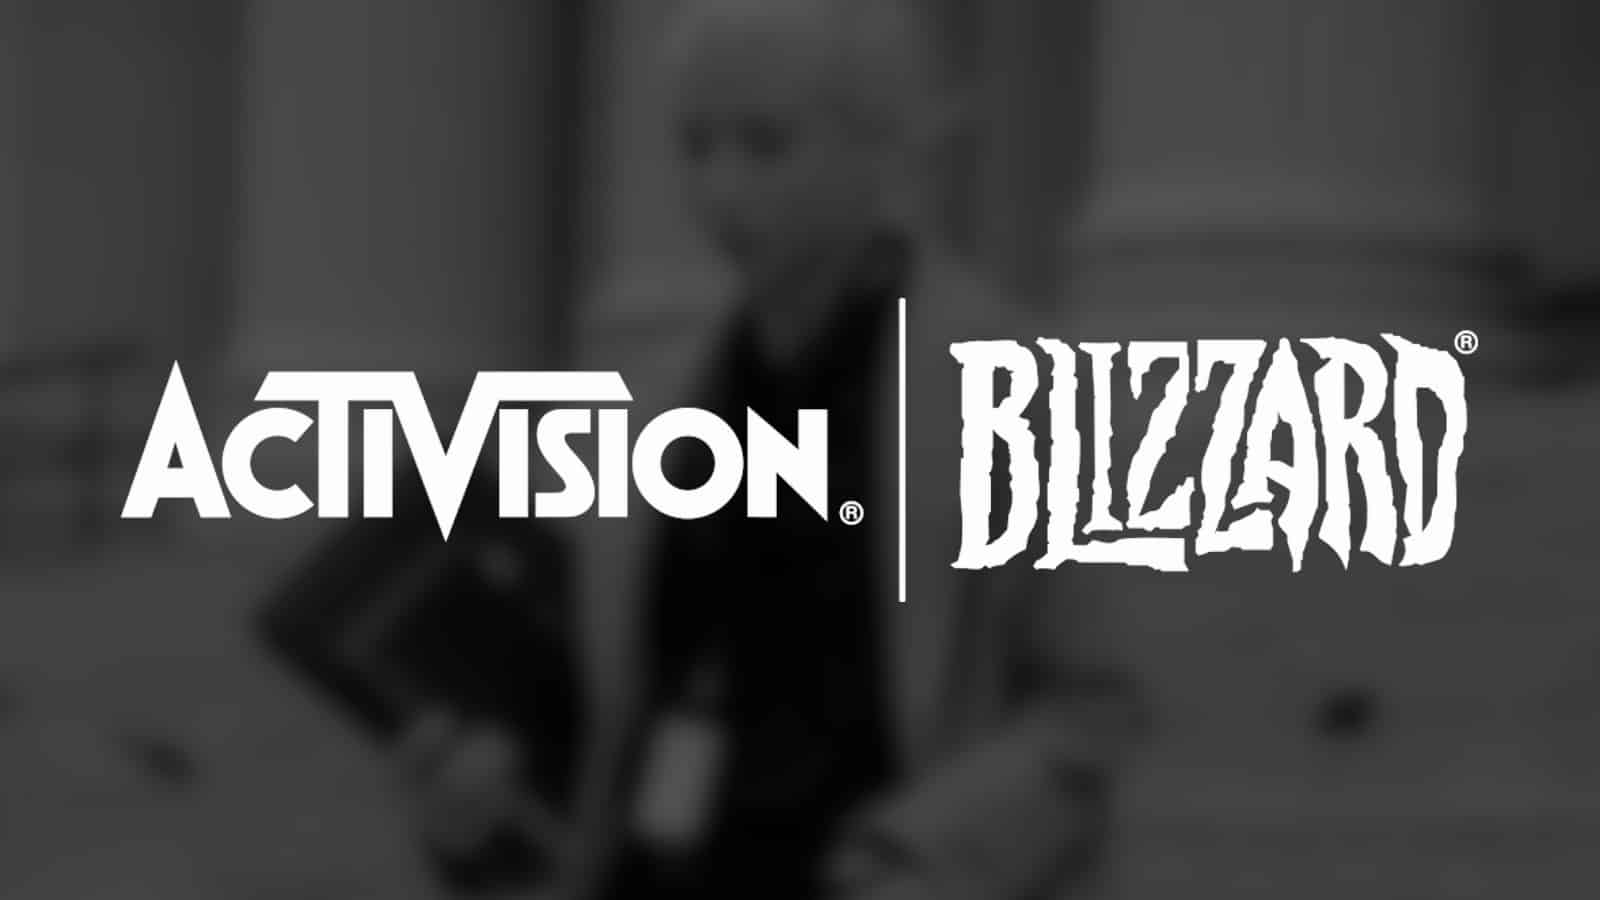 Activision Blizzard logos